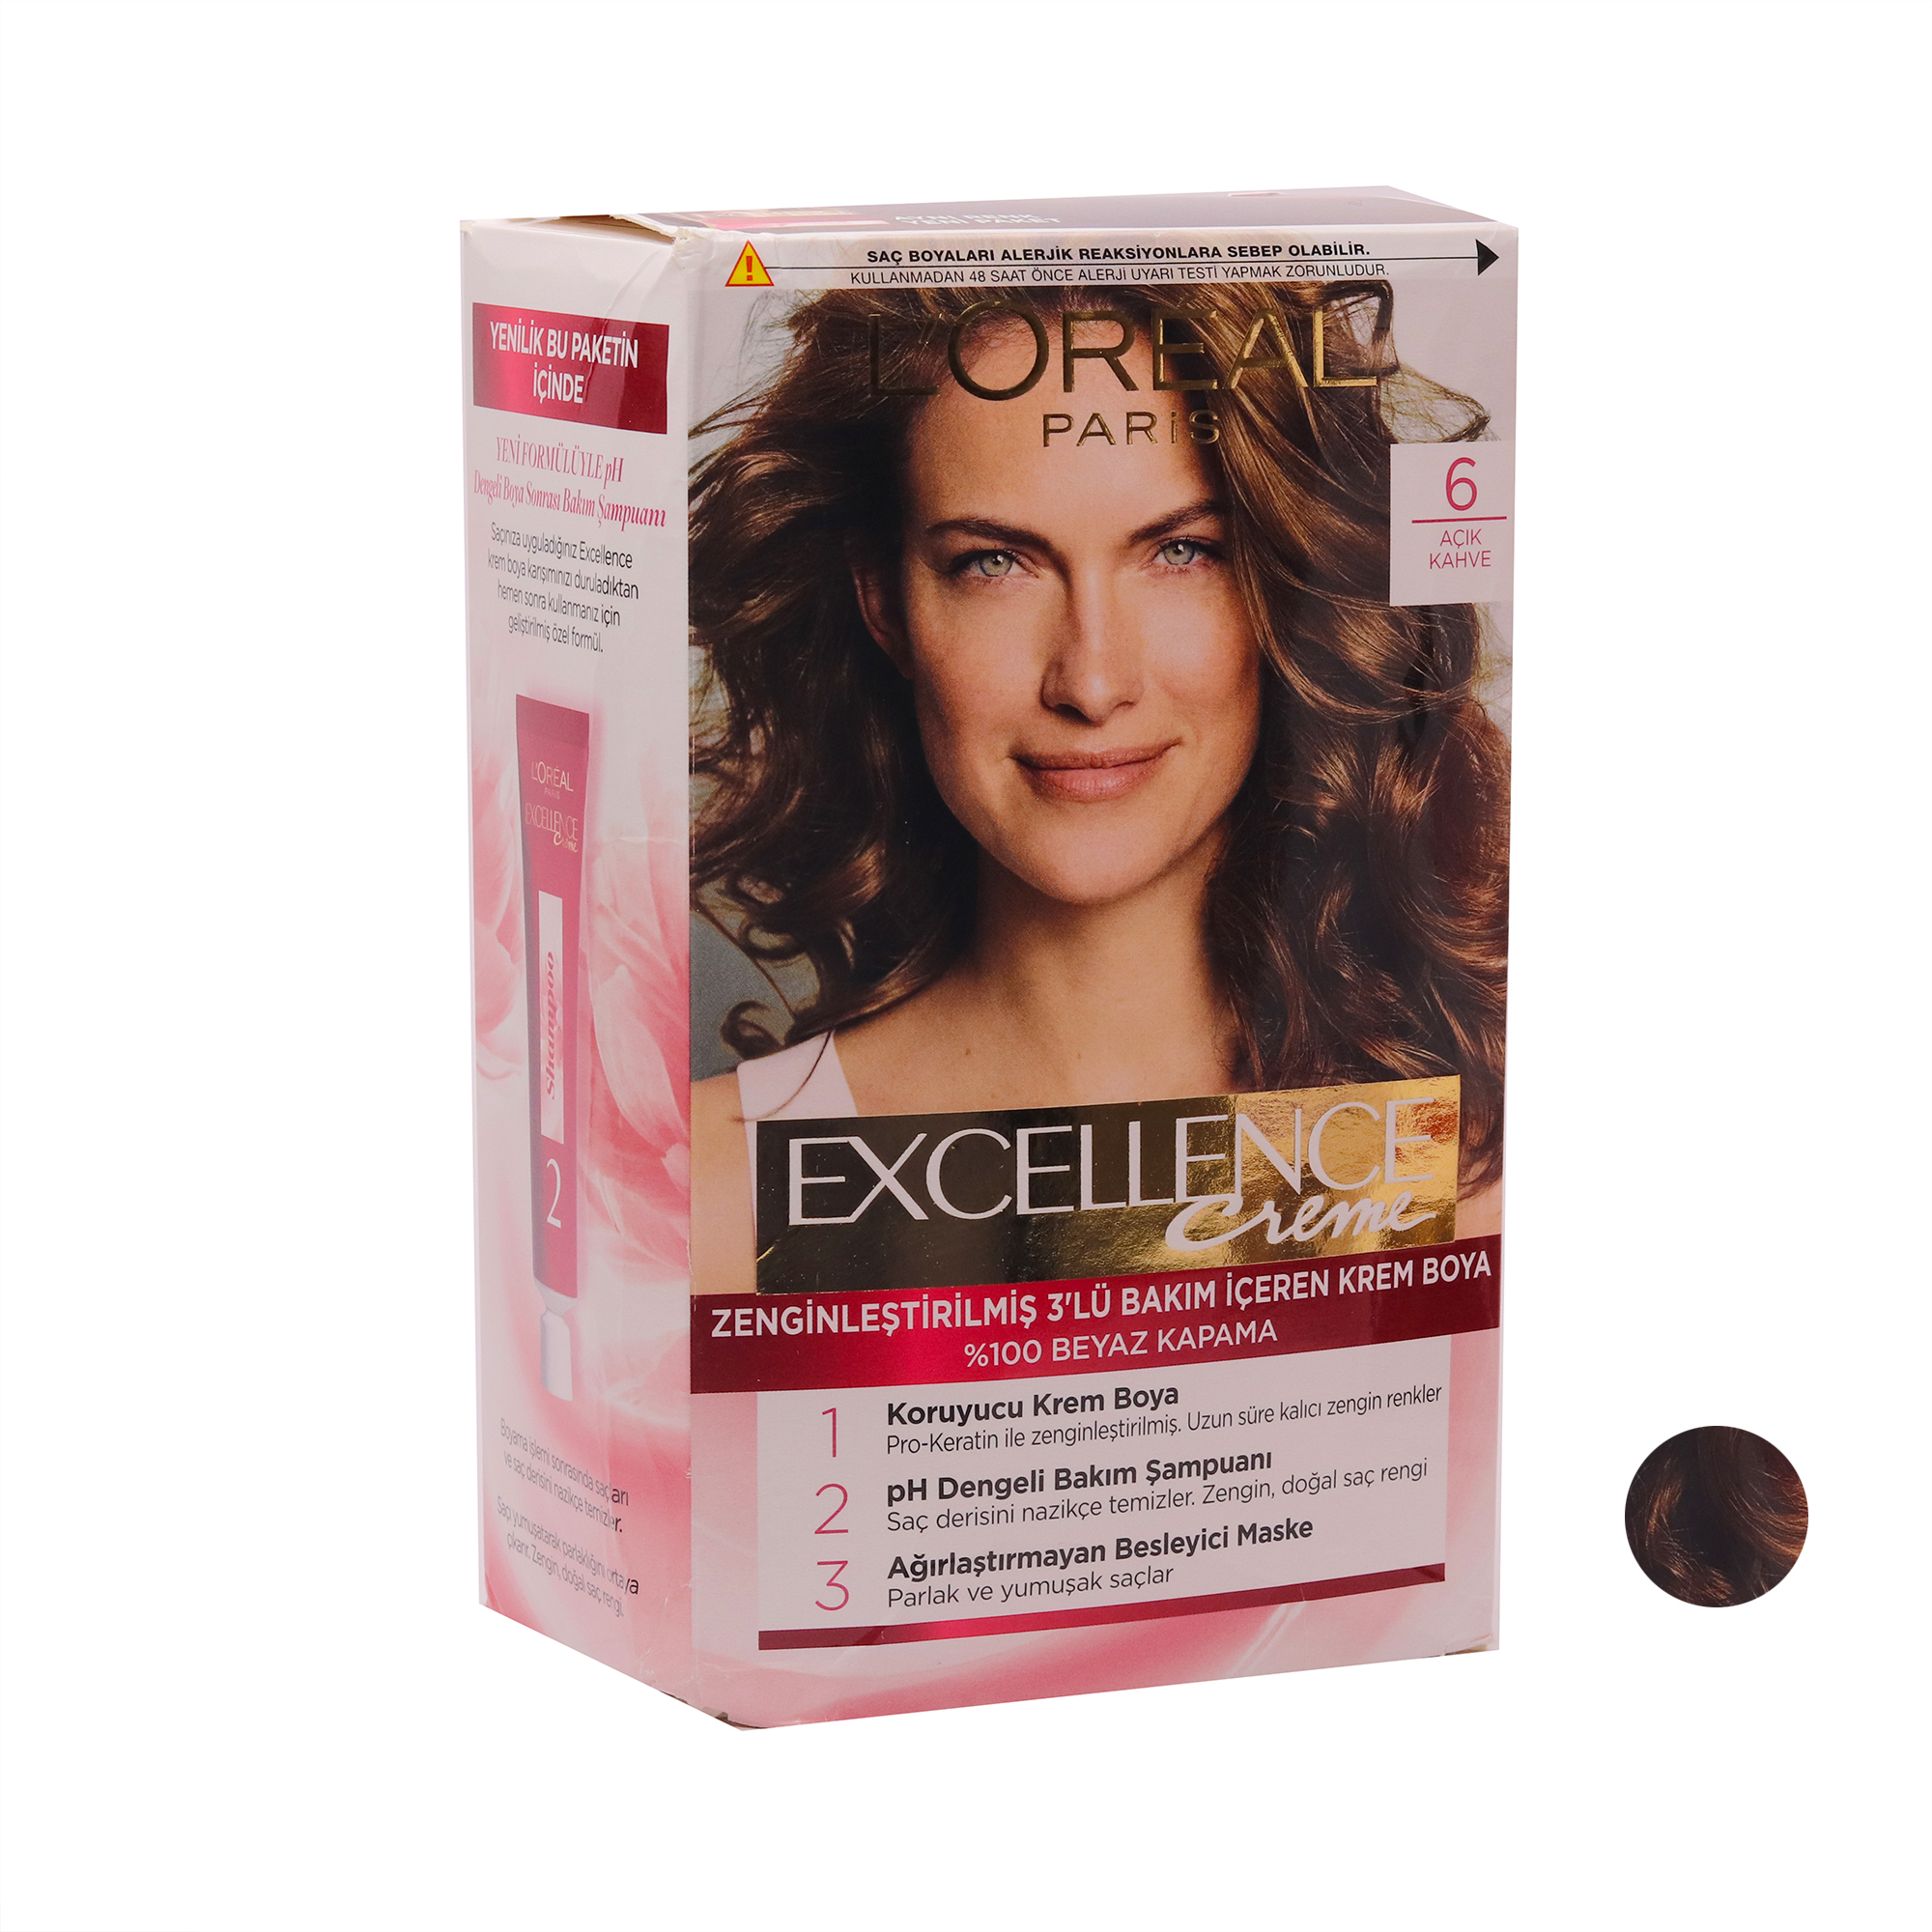 کیت رنگ مو لورآل مدل Excellence شماره 6 حجم 48 میلی لیتر رنگ قهوه ای روشن